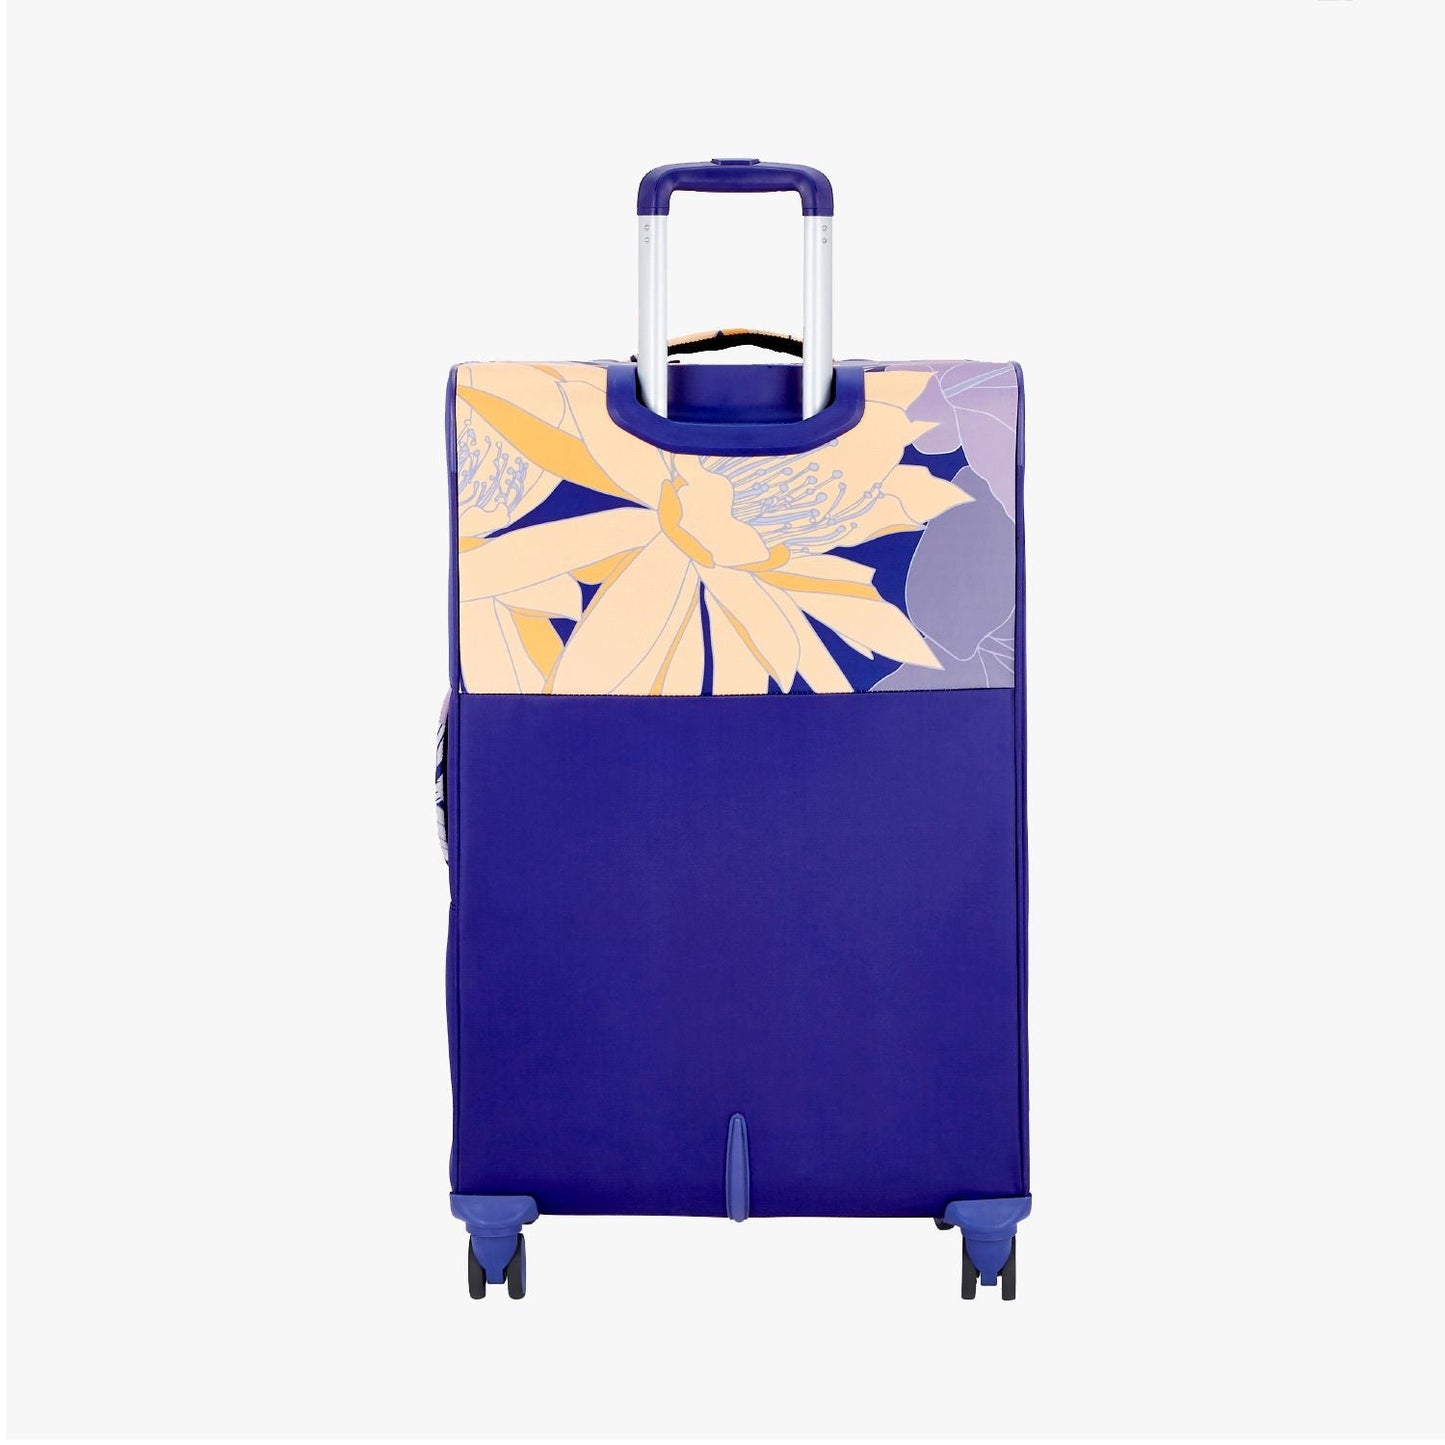 Genie Bahamas Soft Luggage Suitcase